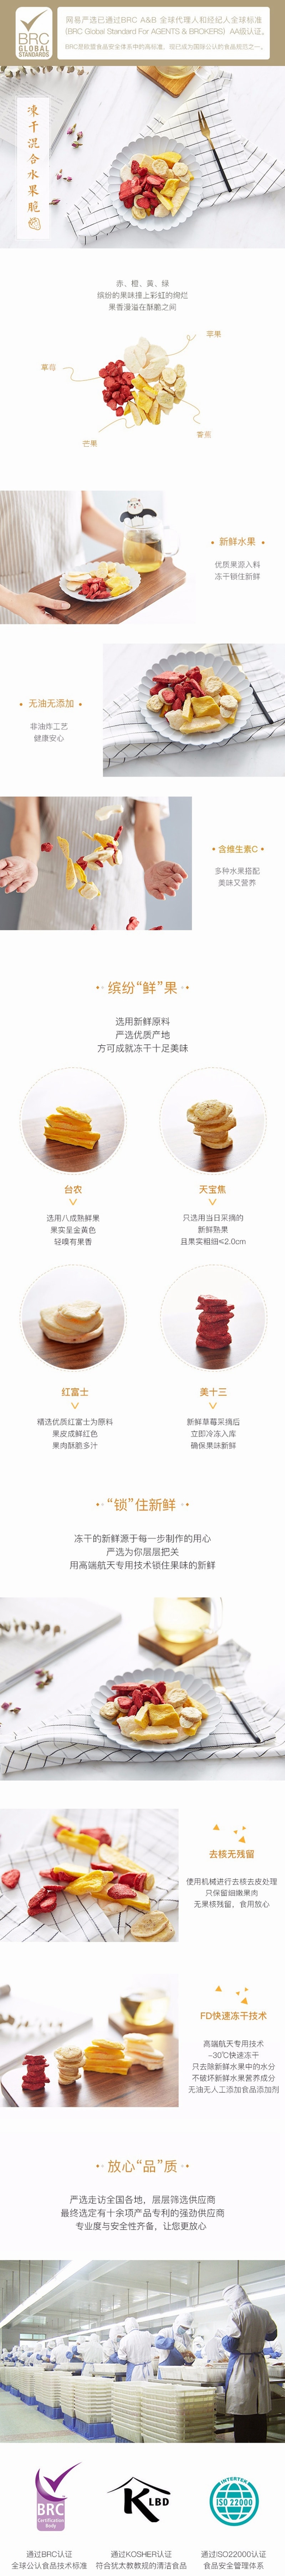 【中国直邮】网易严选 冻干混合水果脆 32克 蜜饯水果干 休闲健康零食小吃